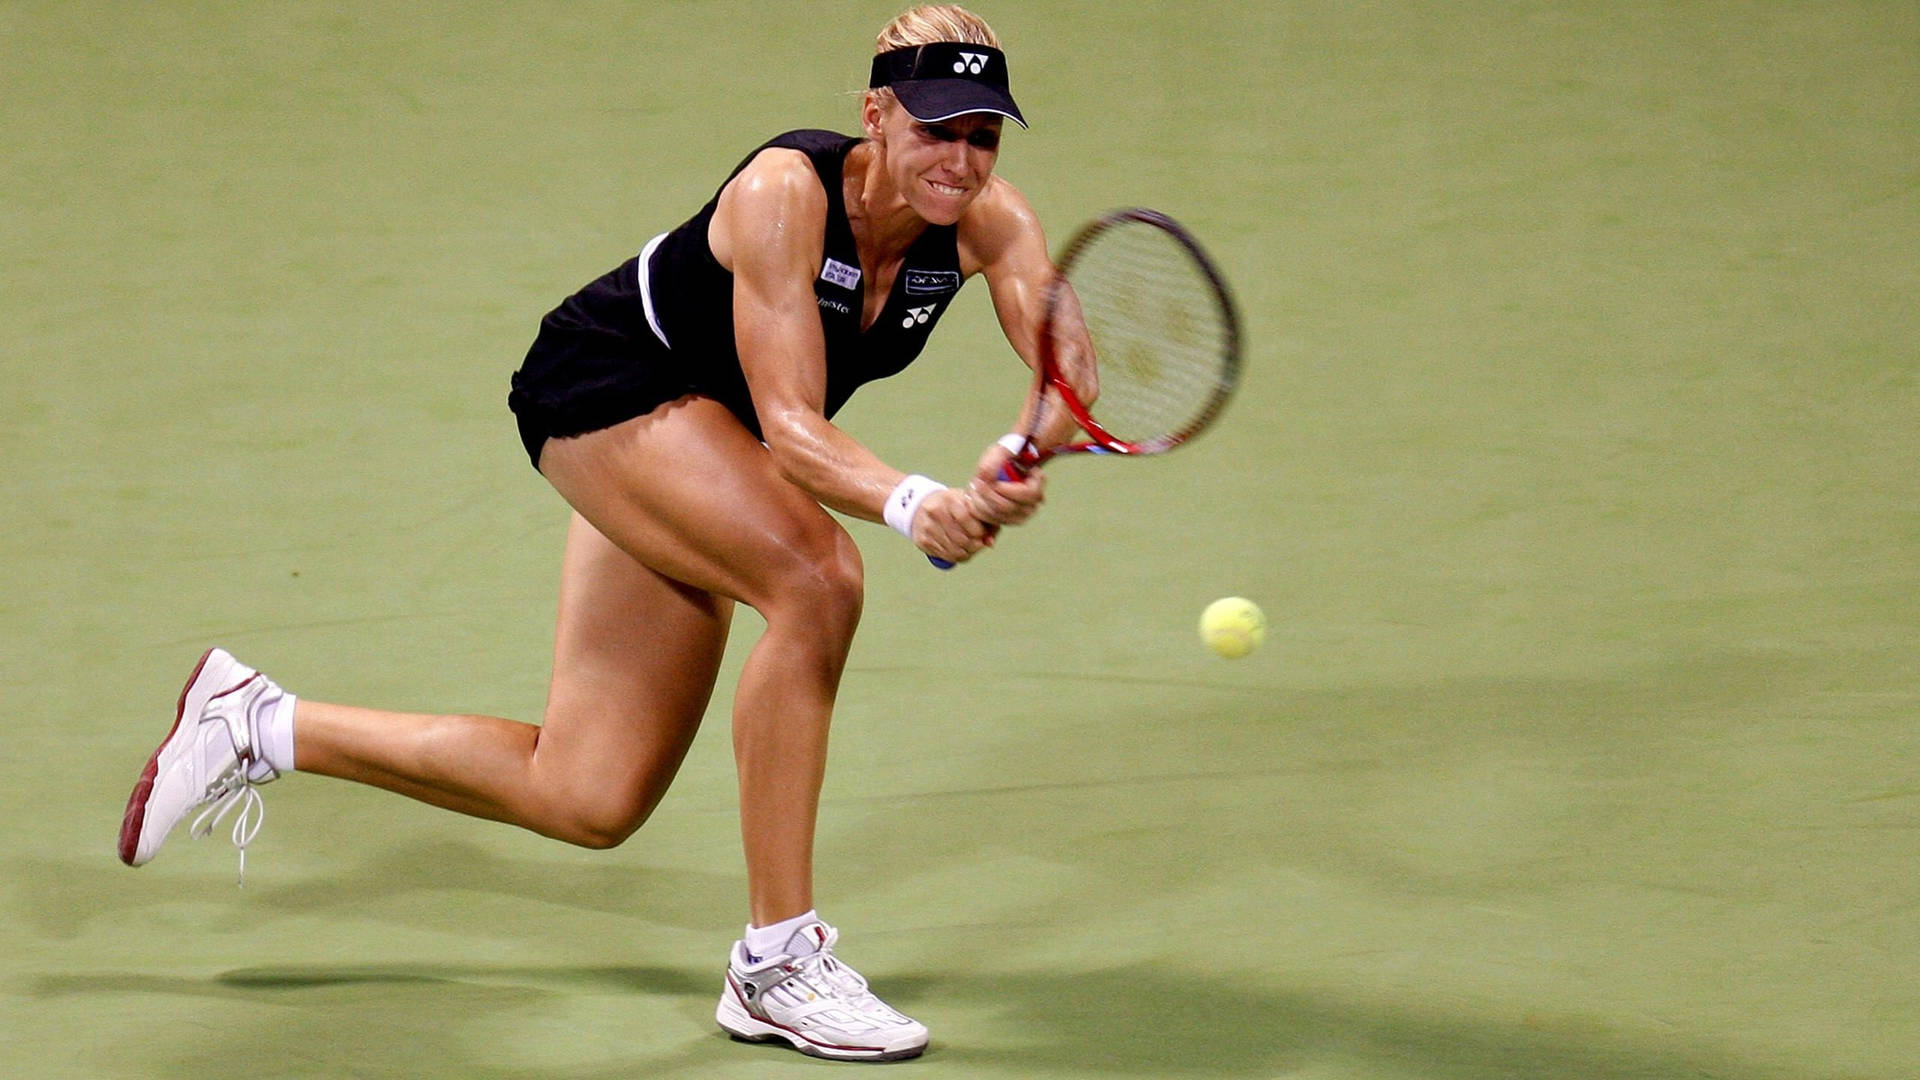 Elena Dementieva in Action on the Tennis Court Wallpaper